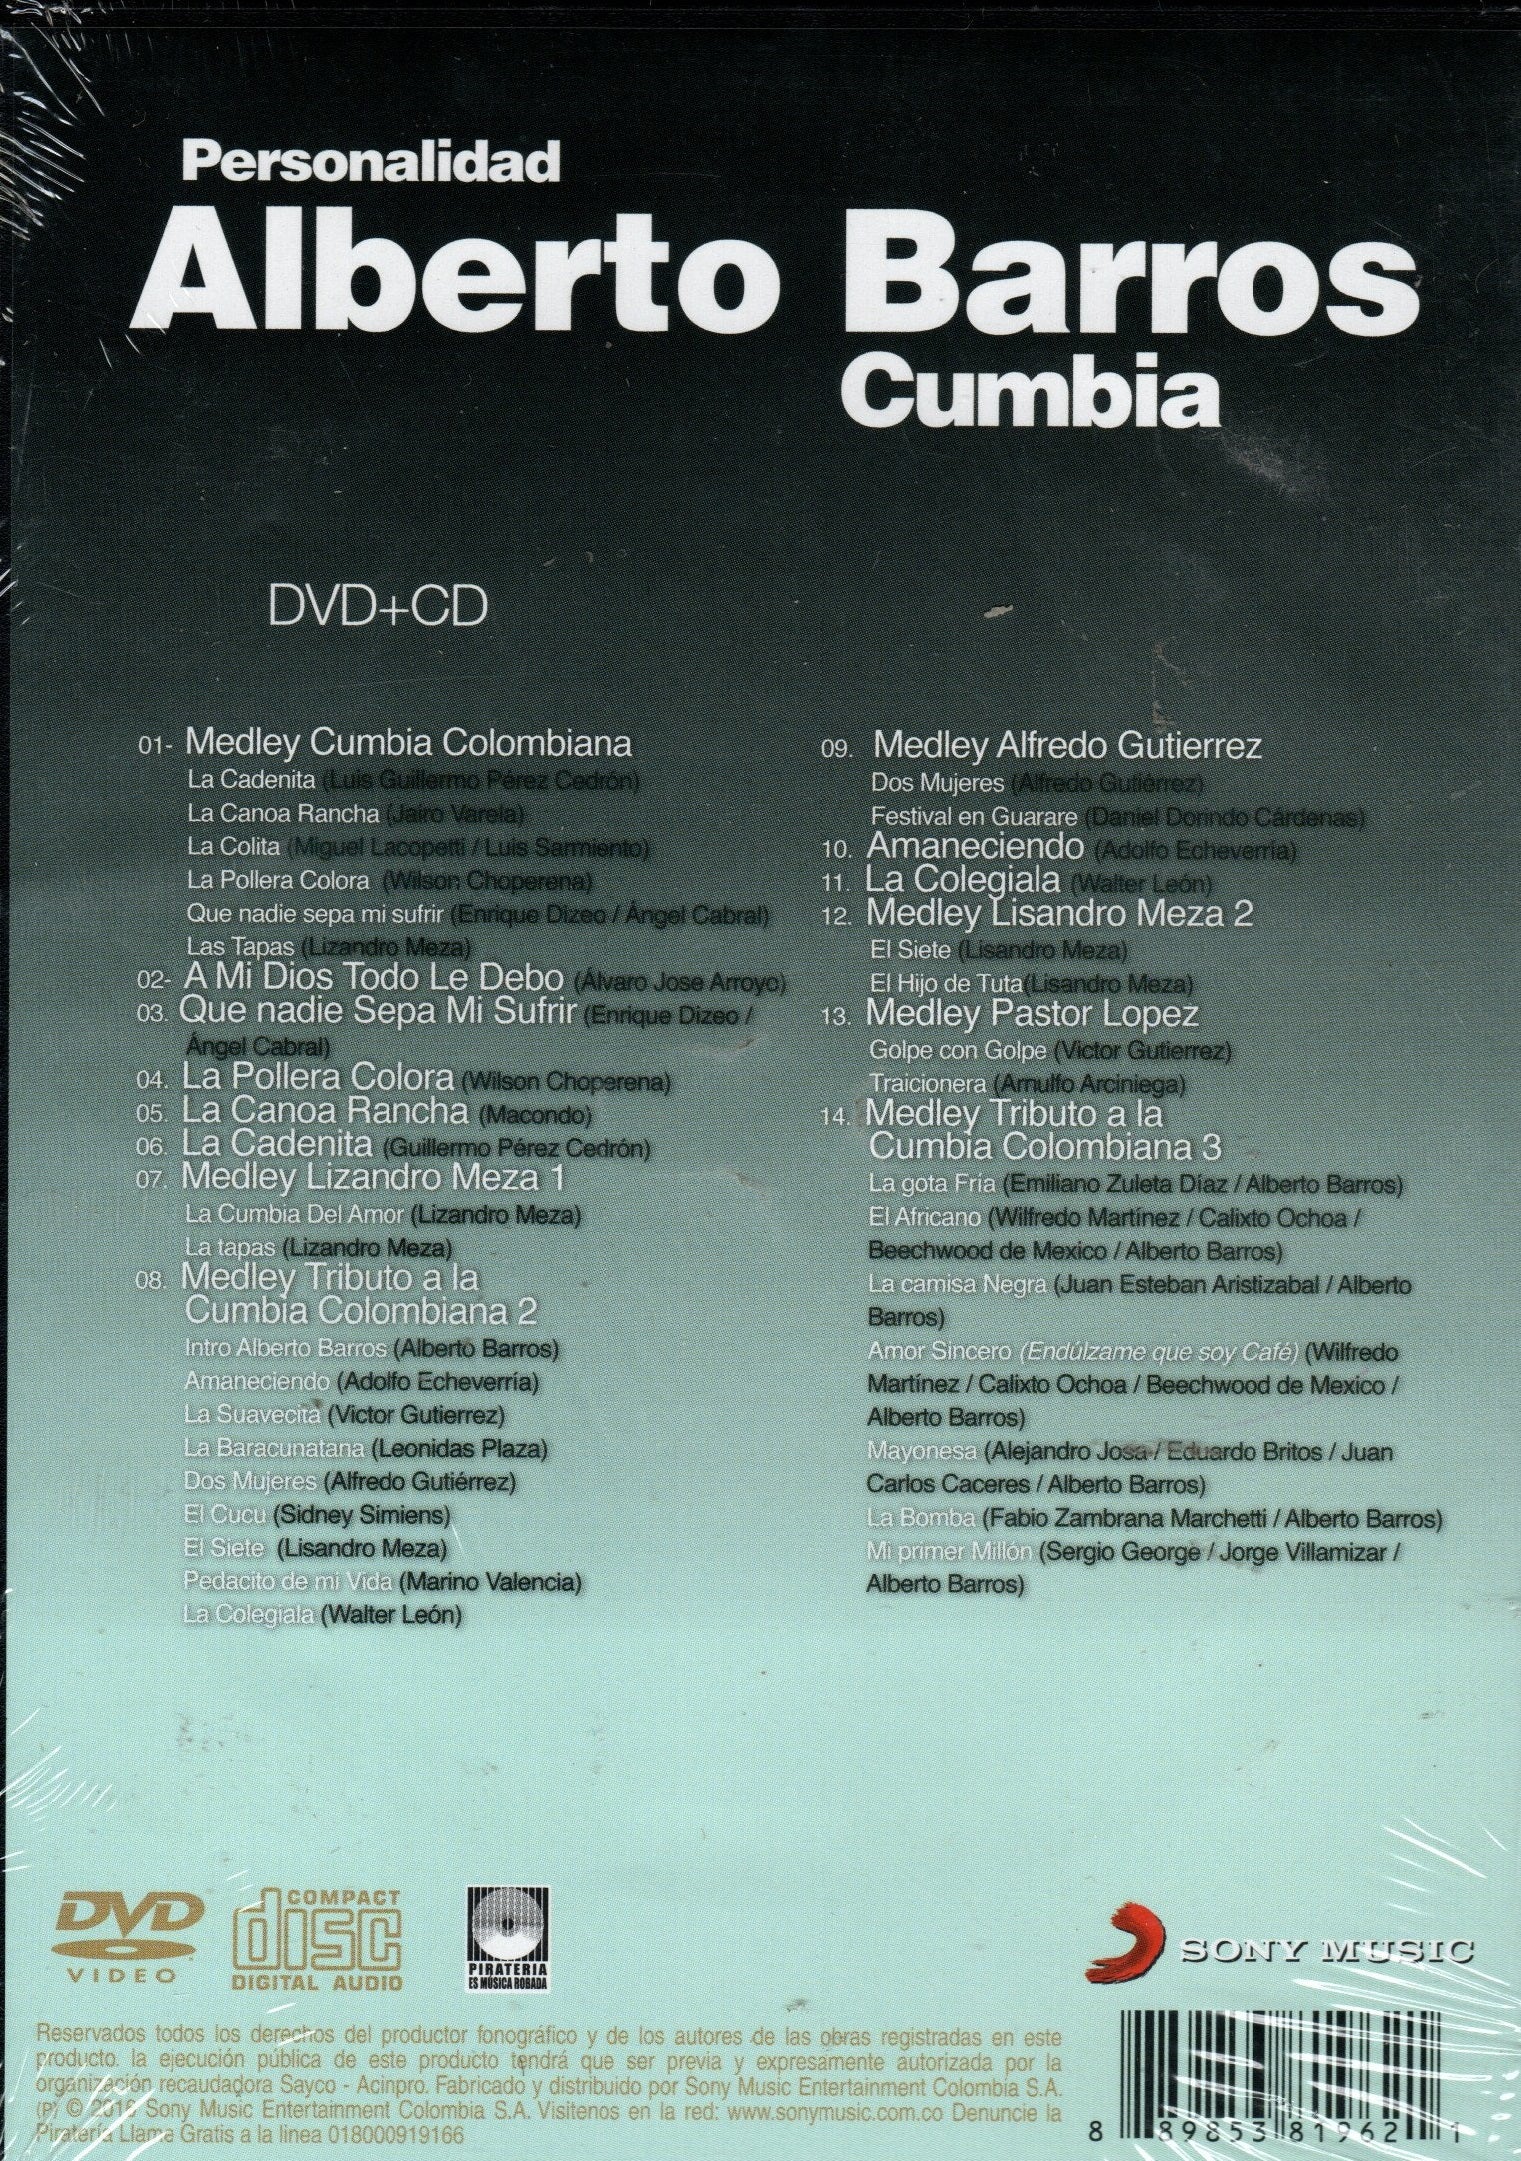 CD+DVD Alberto Barros Cumbia - Personalidad